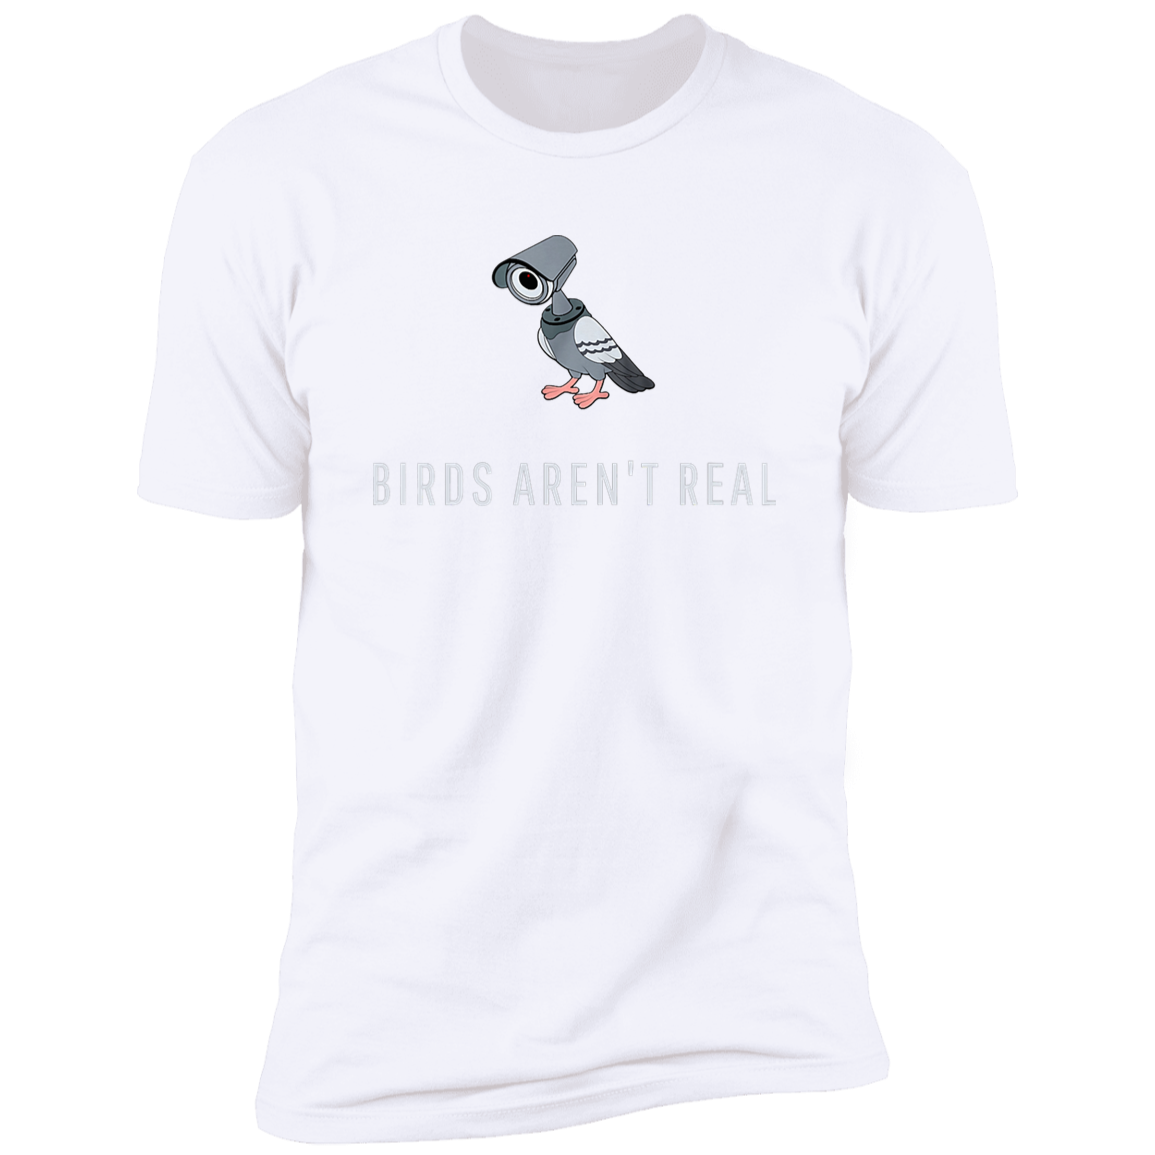 Birds aren’t real T-Shirt